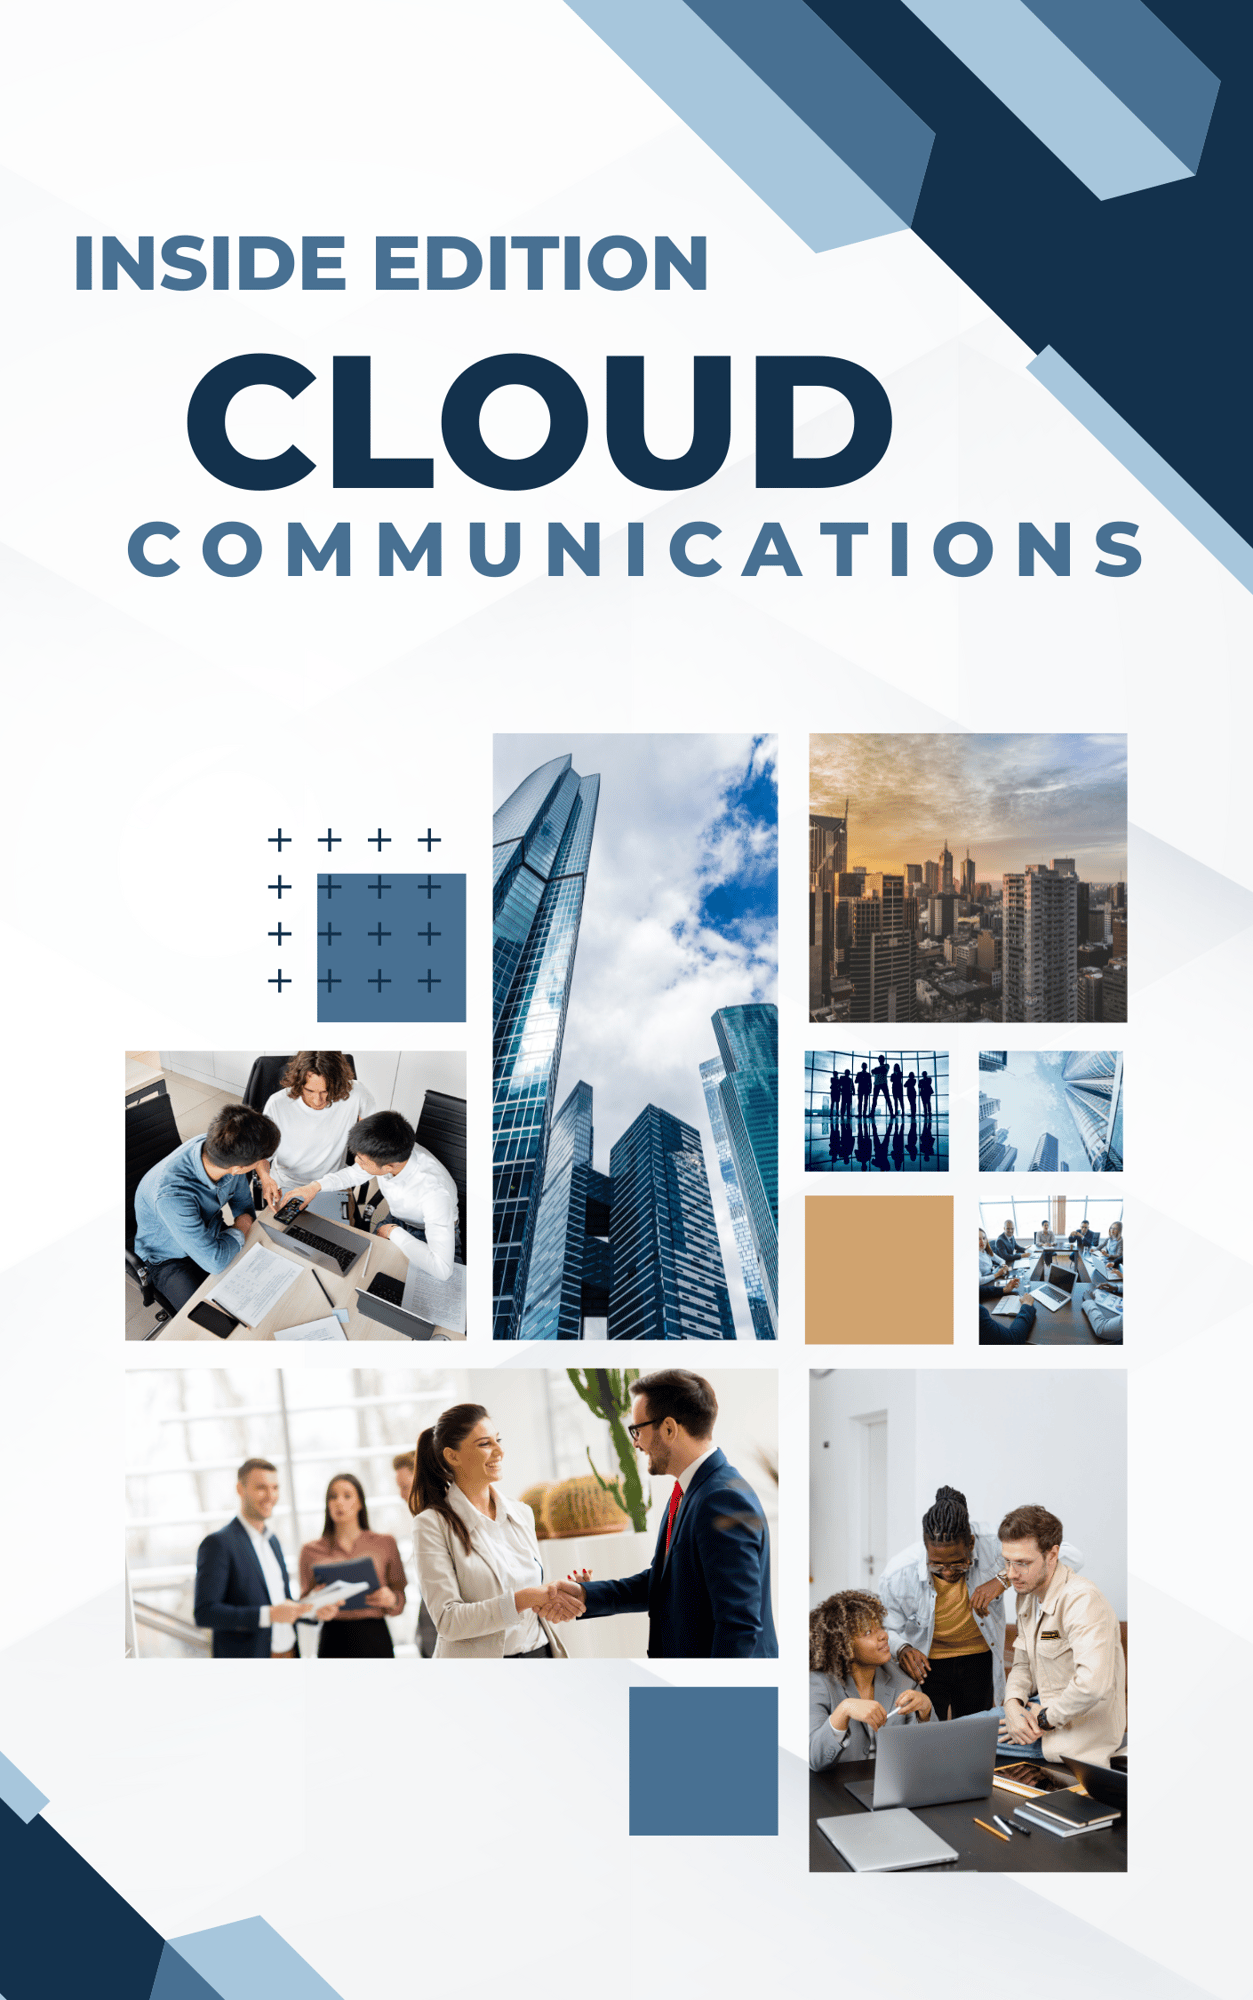 Cloud Communications